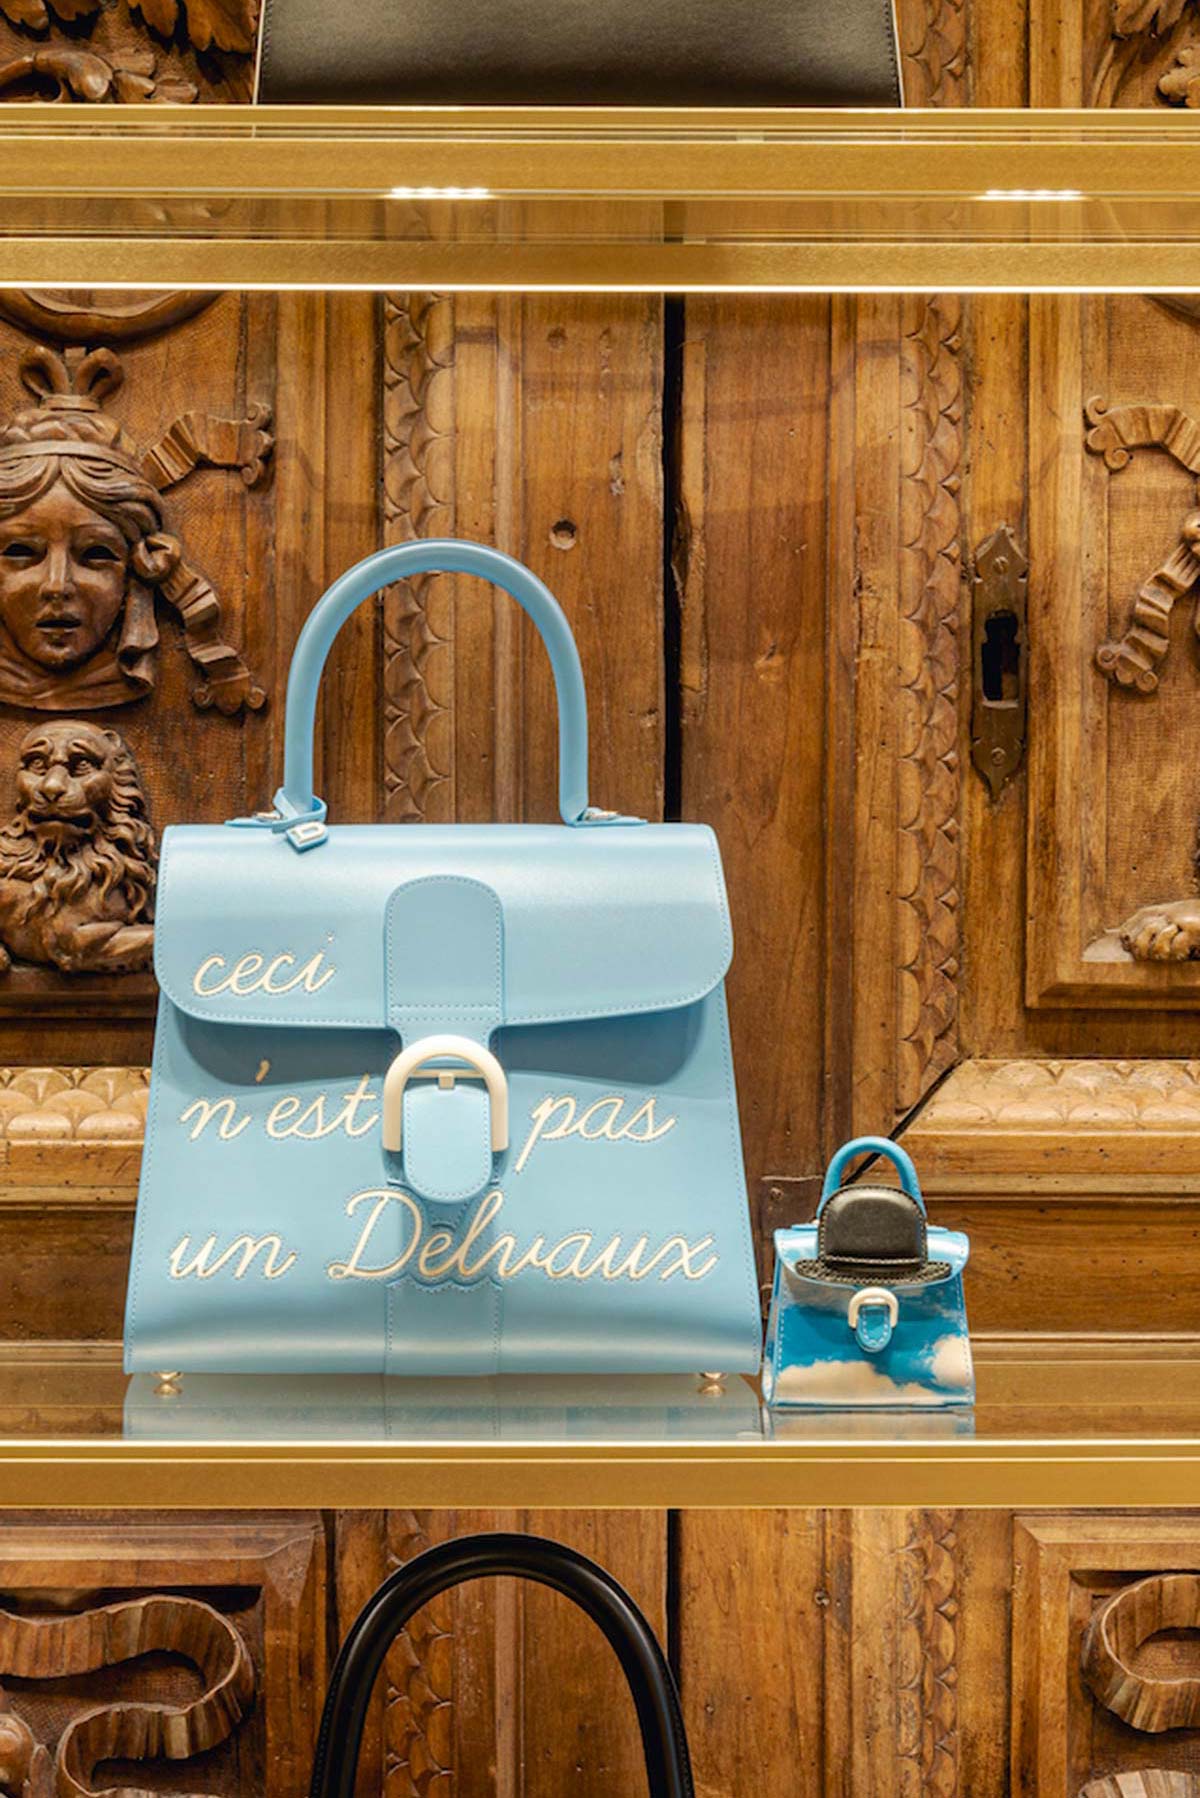 A new Delvaux boutique in Paris - Design Diffusion